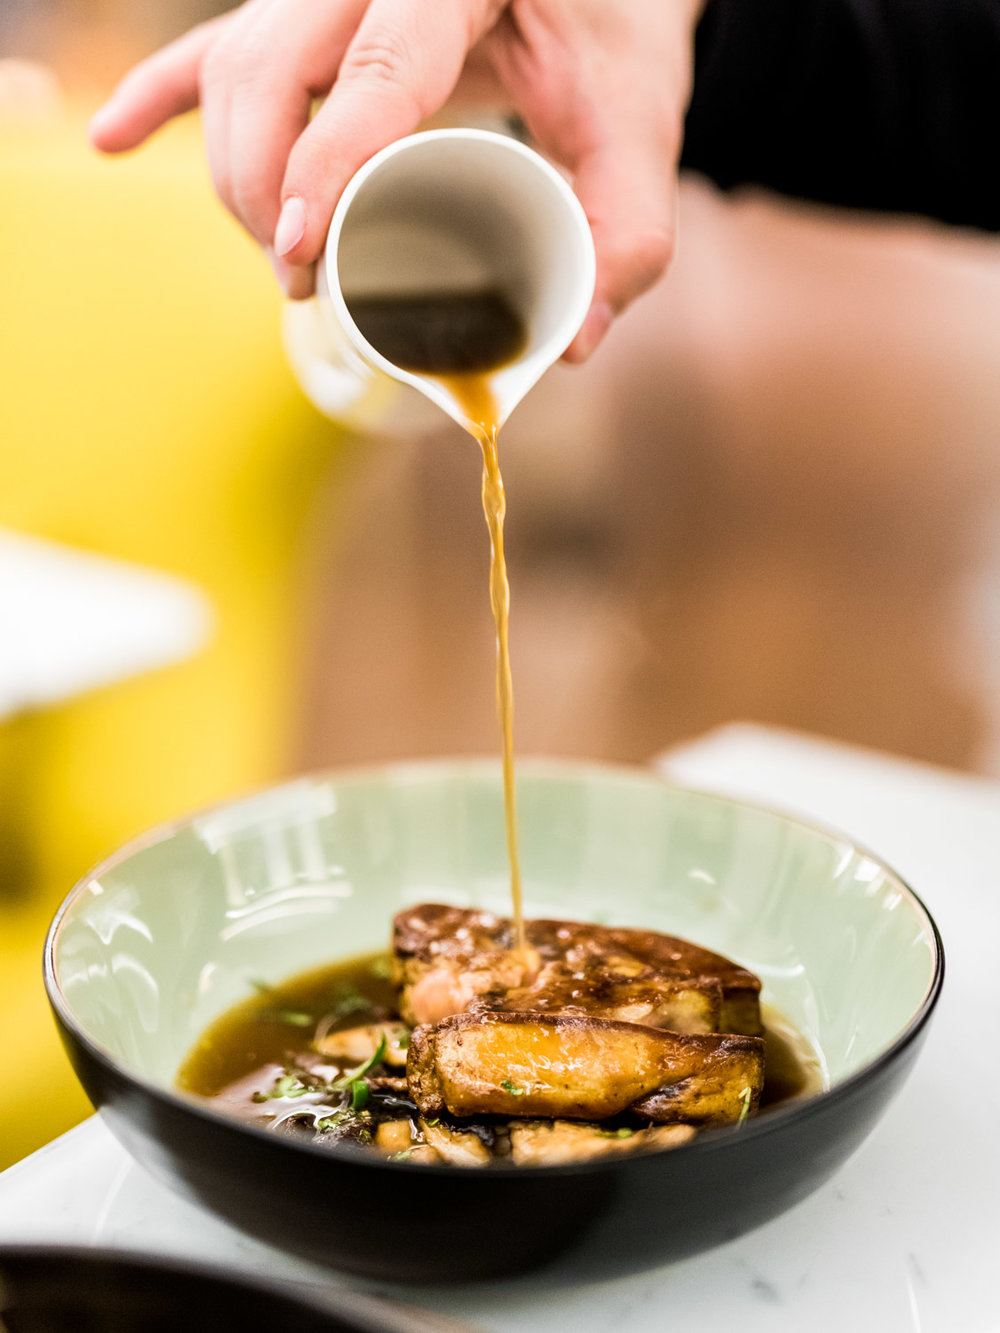 Foie gras de canard poêlé au ORIGIN Restaurant - Toutes les photos sont sous Copyright © 2017 Jeff Frenette Photography / dezjeff. Pour utilisation des photos, me contacter au dezjeff@me.com